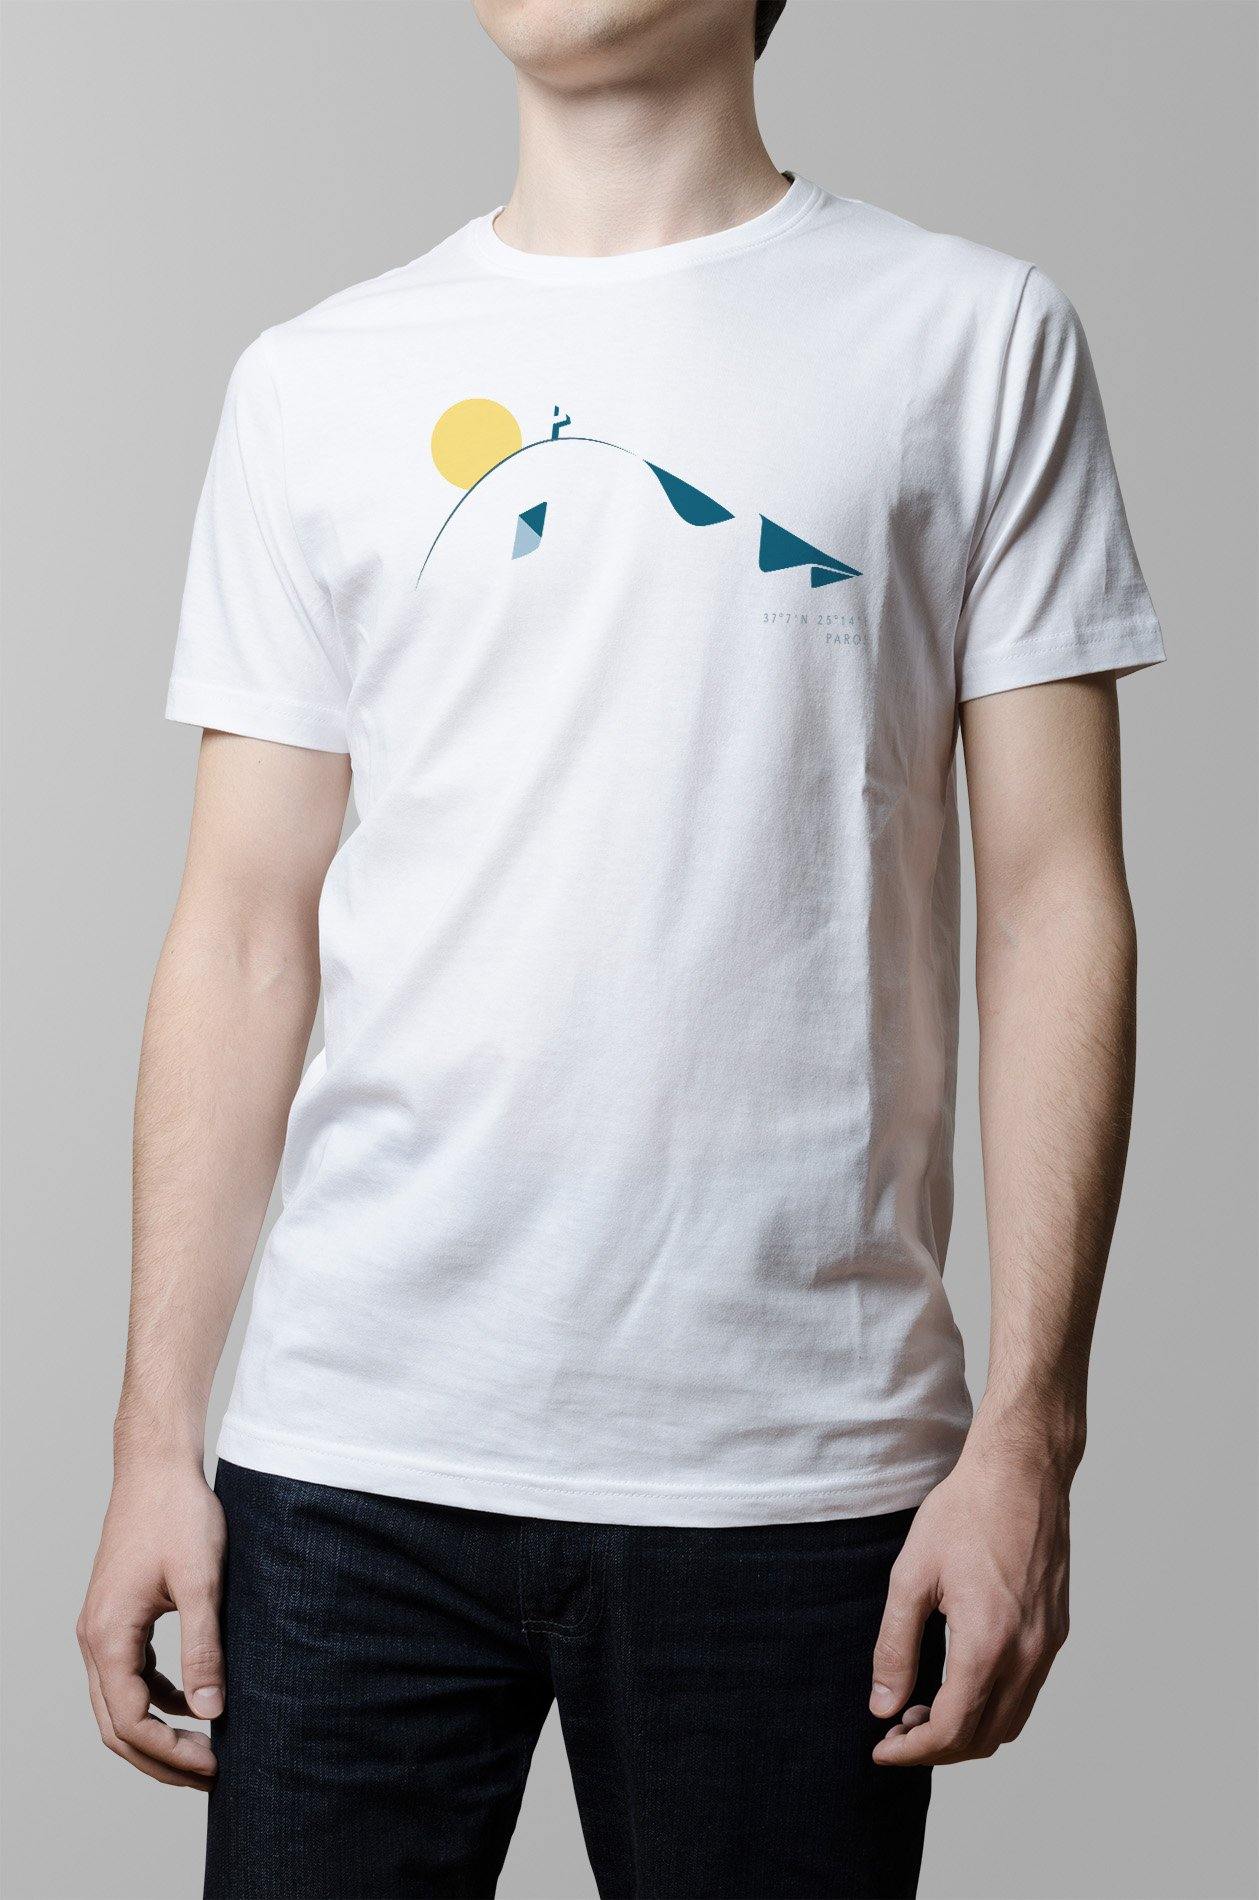 Cycladic Church T-Shirt - YOU & ISLAND